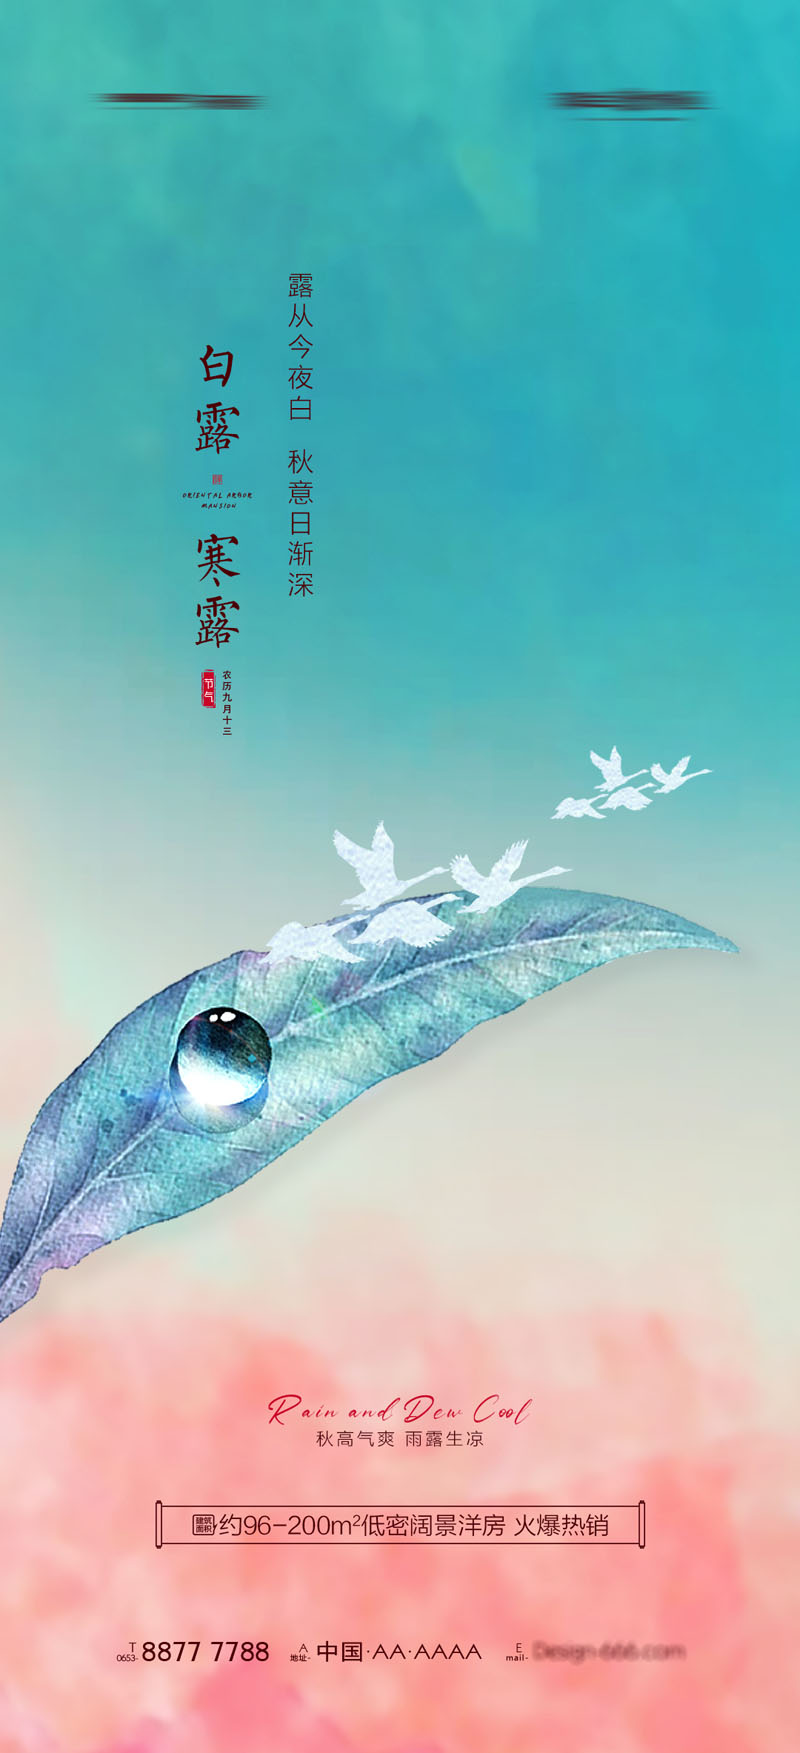 94款中国传统二十四节气之寒露节日海报PSD模板 设计素材 第3张